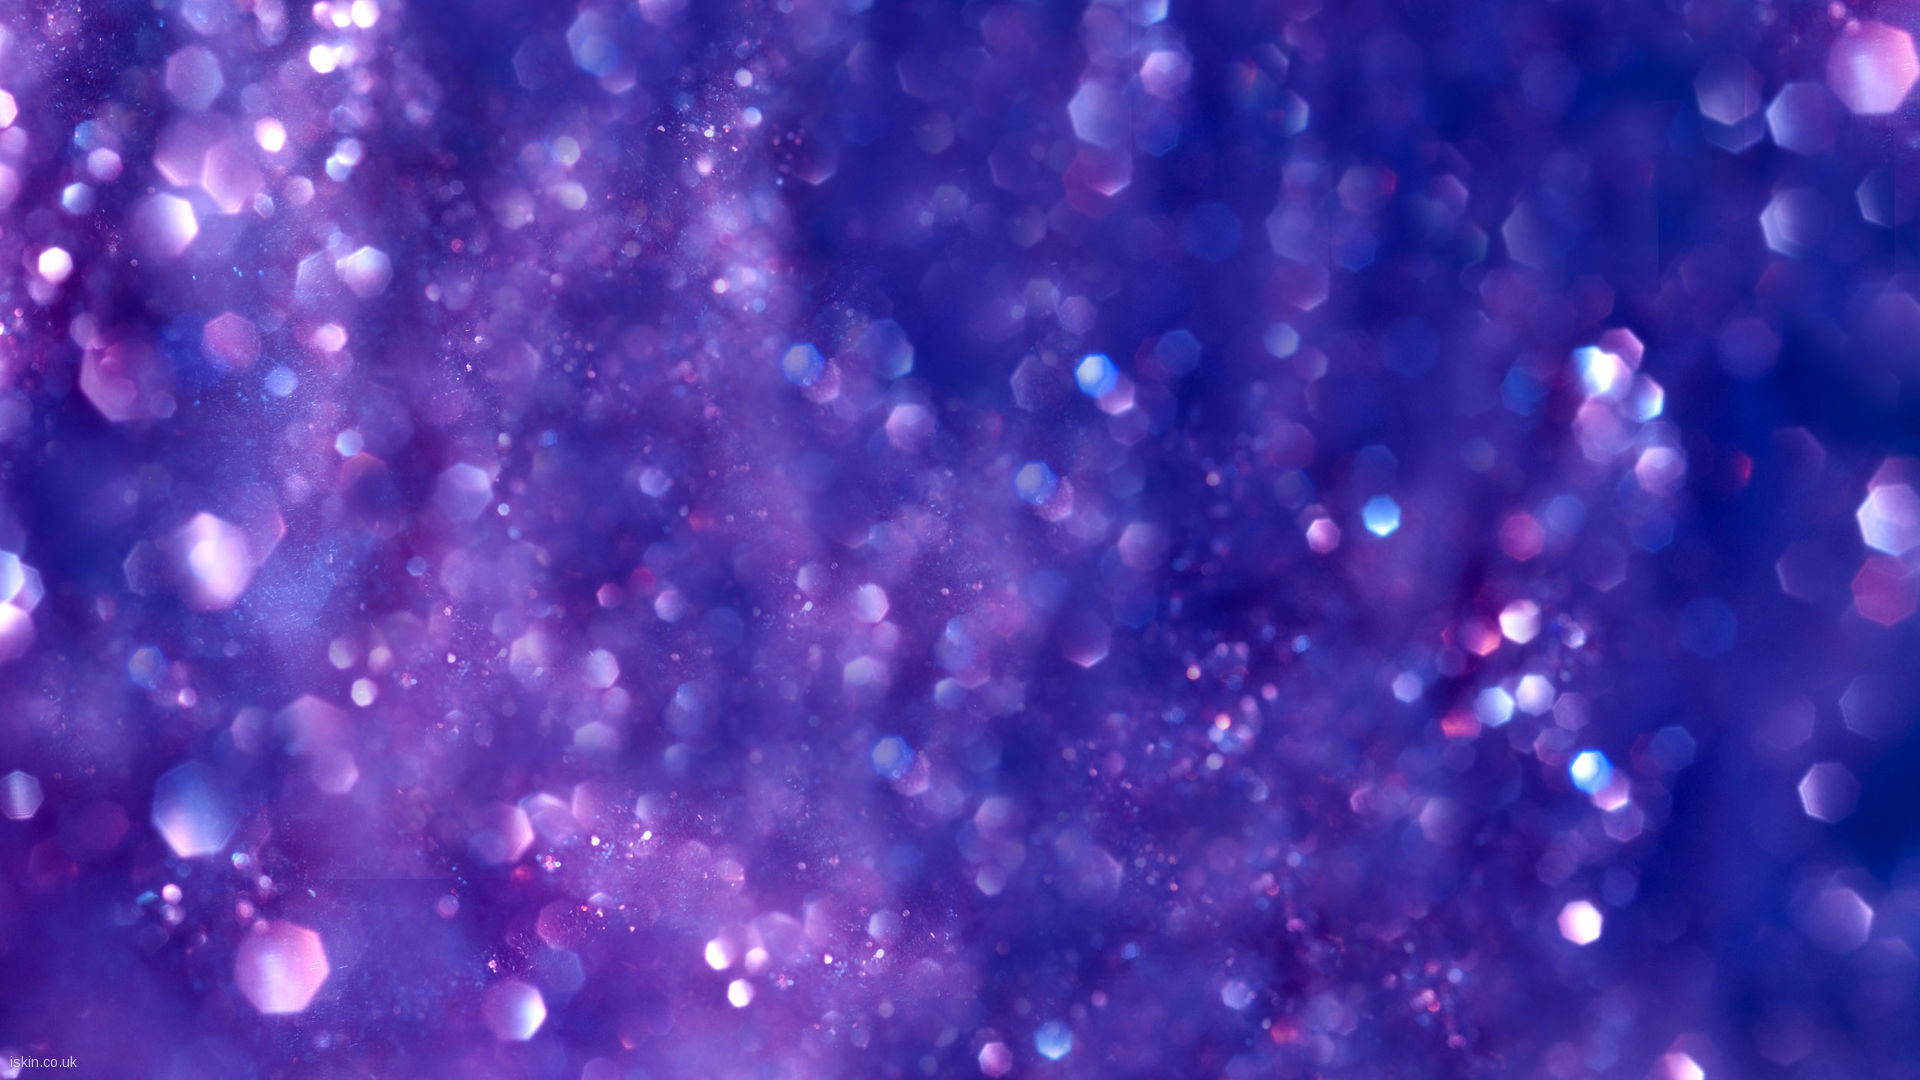 1920x1080 purple glitter Desktop Wallpaper | iskin.co.uk